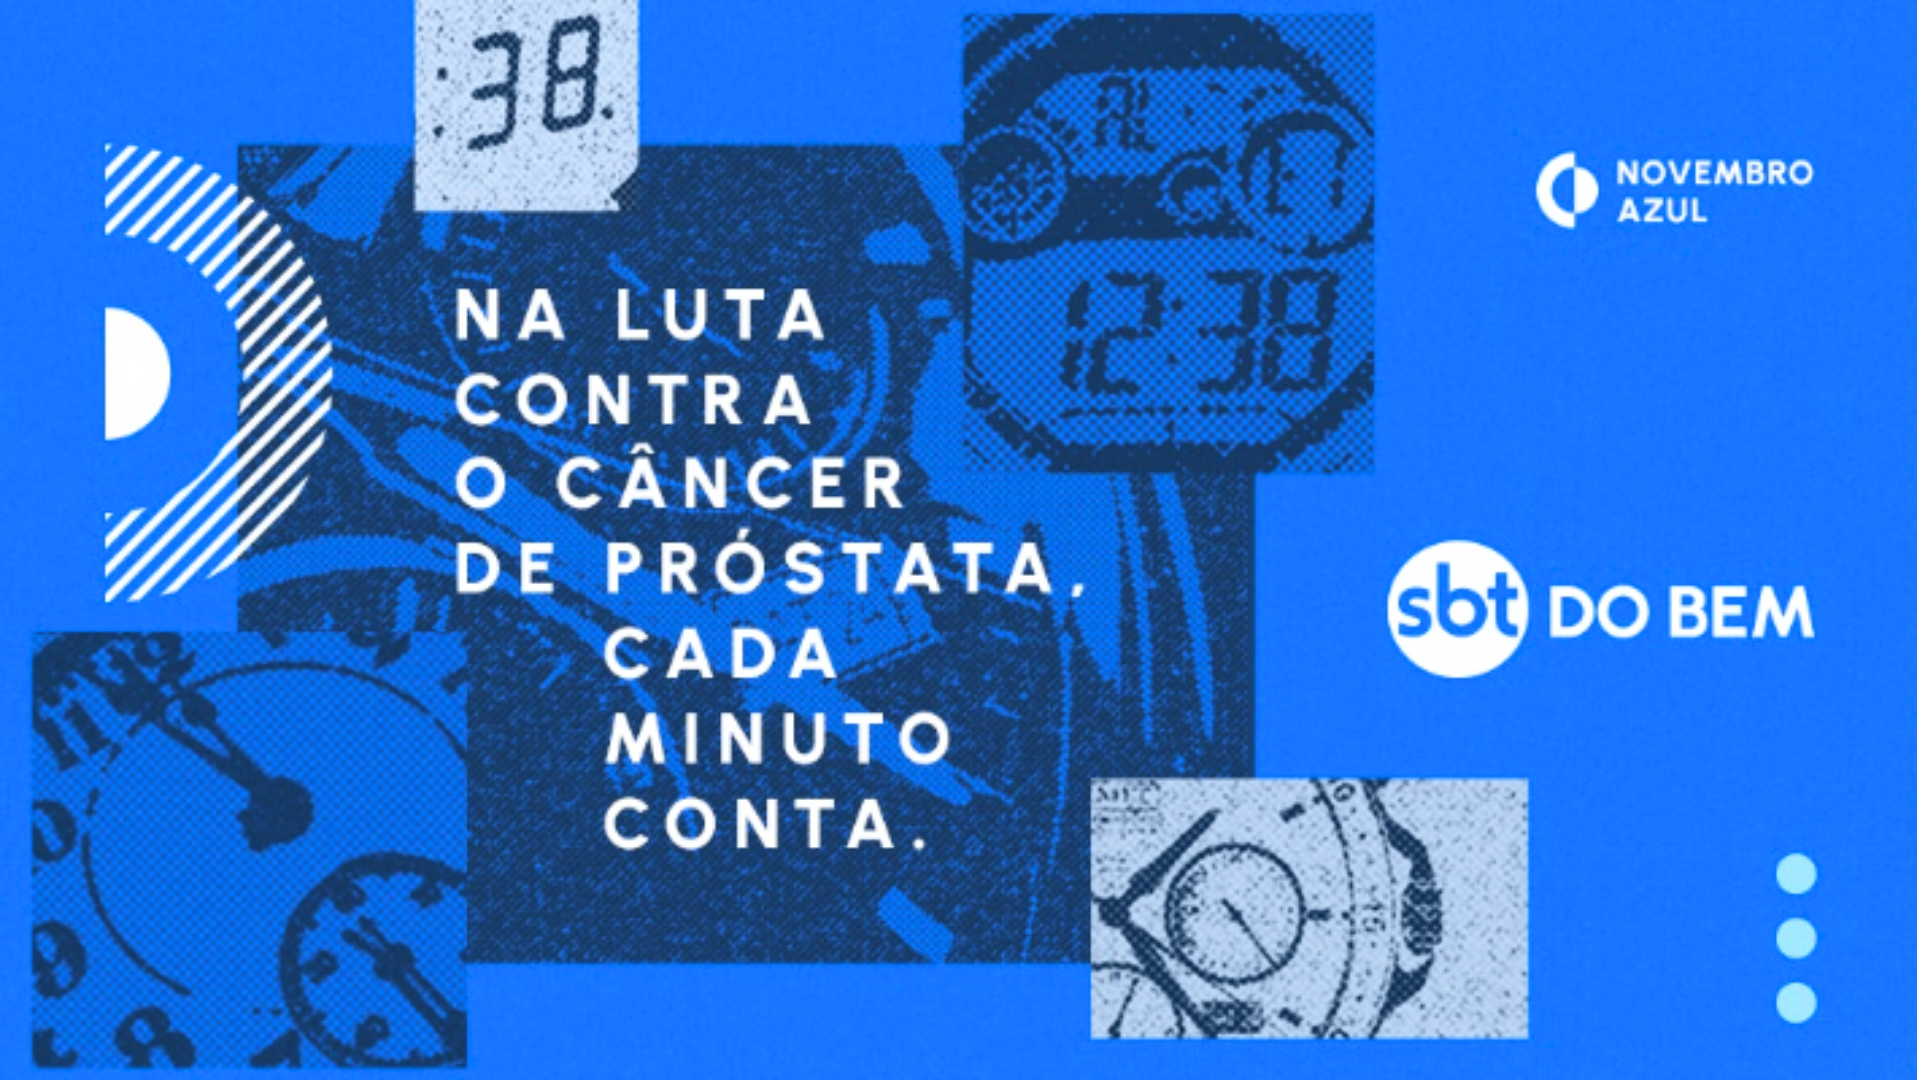 SBT do Bem lança ‘Break da Prevenção’ em apoio ao Novembro Azul